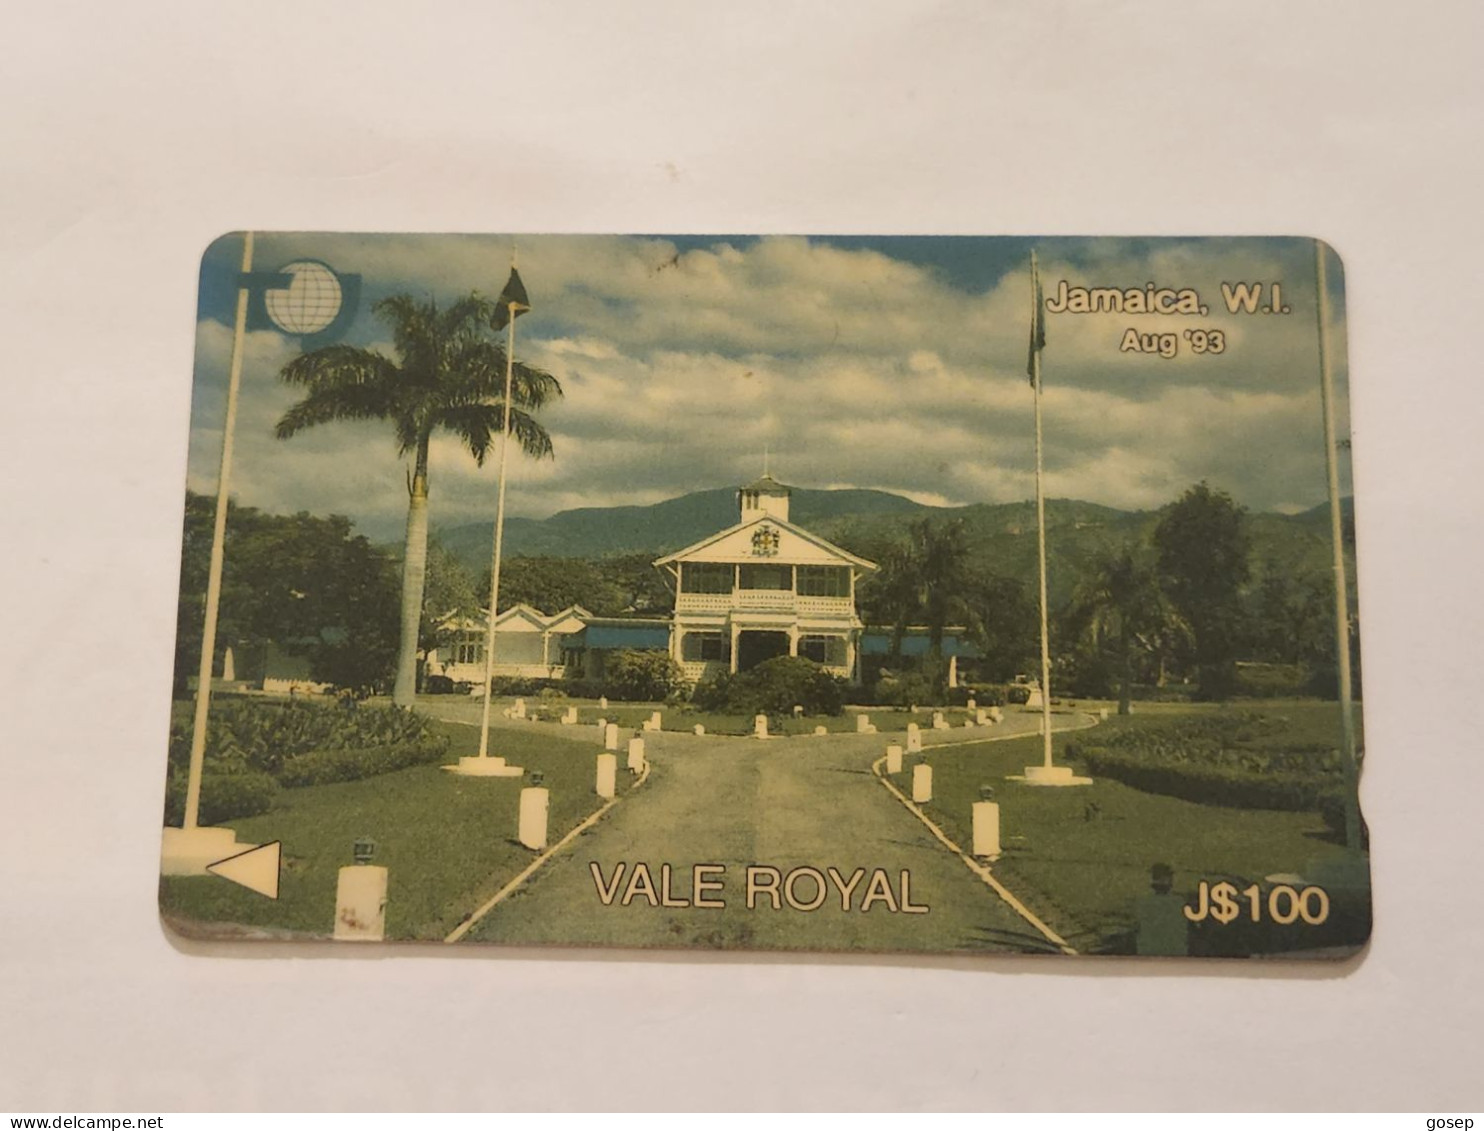 JAMAICA-(15JAMA(a)-JAM-15A-(a))-Vale Royal-August-93-(28)-(15JAMA126364)-(J$100)-used Card+1card Prepiad - Jamaica